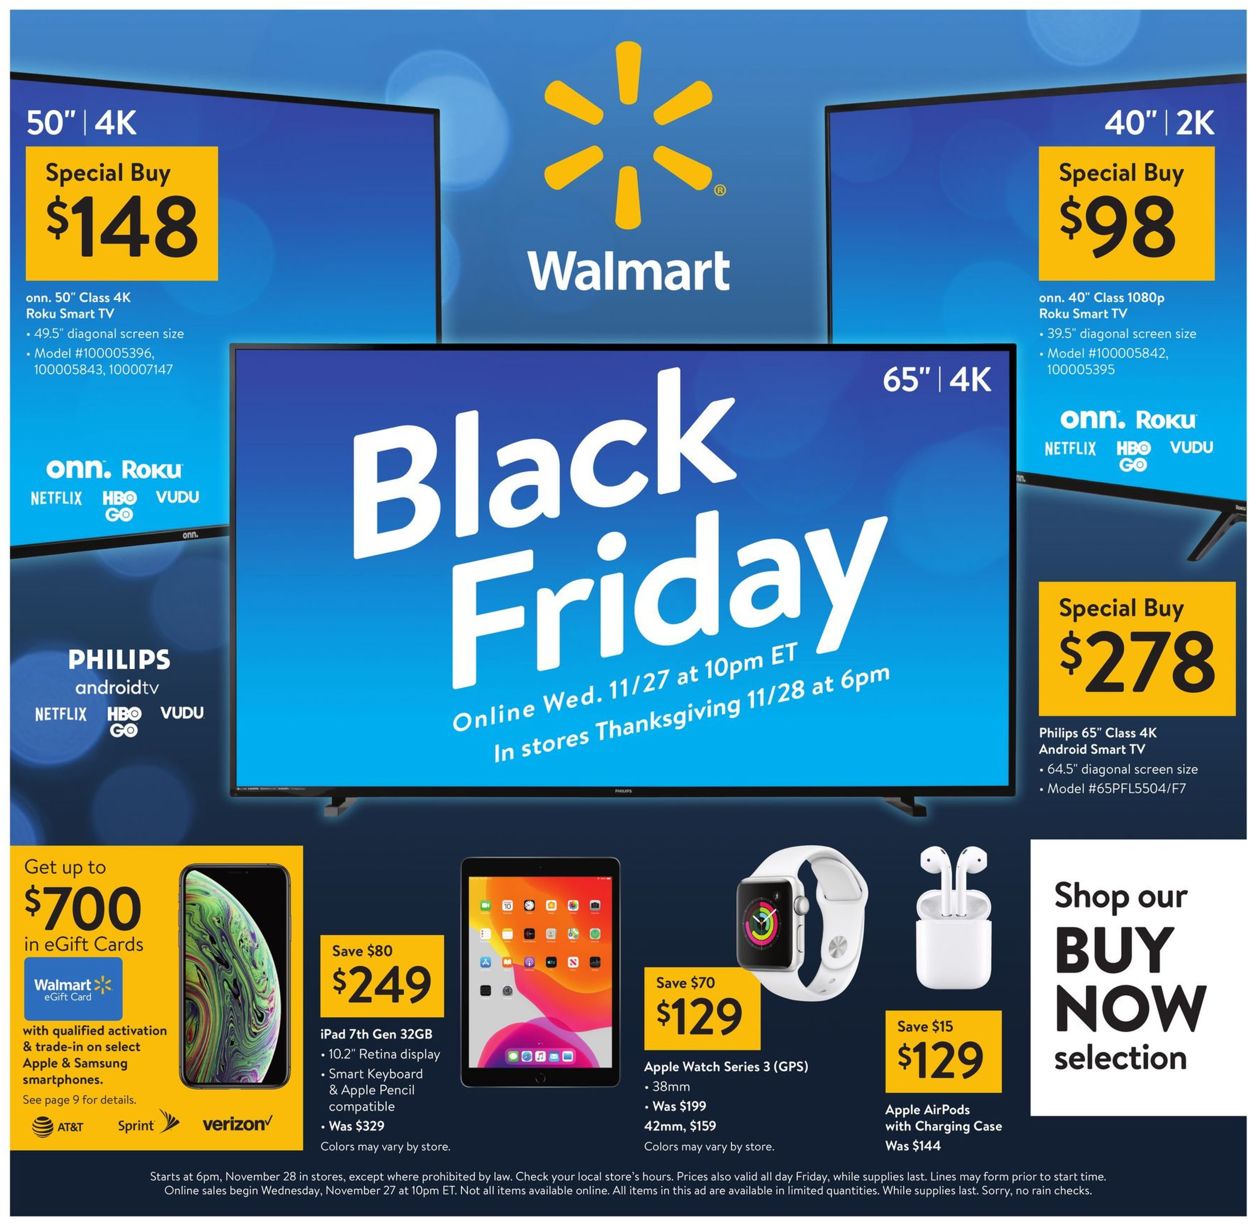 Walmart - Black Friday Ad 2019 Current weekly ad 11/28 - 11/29/2019 - wcy.wat.edu.pl